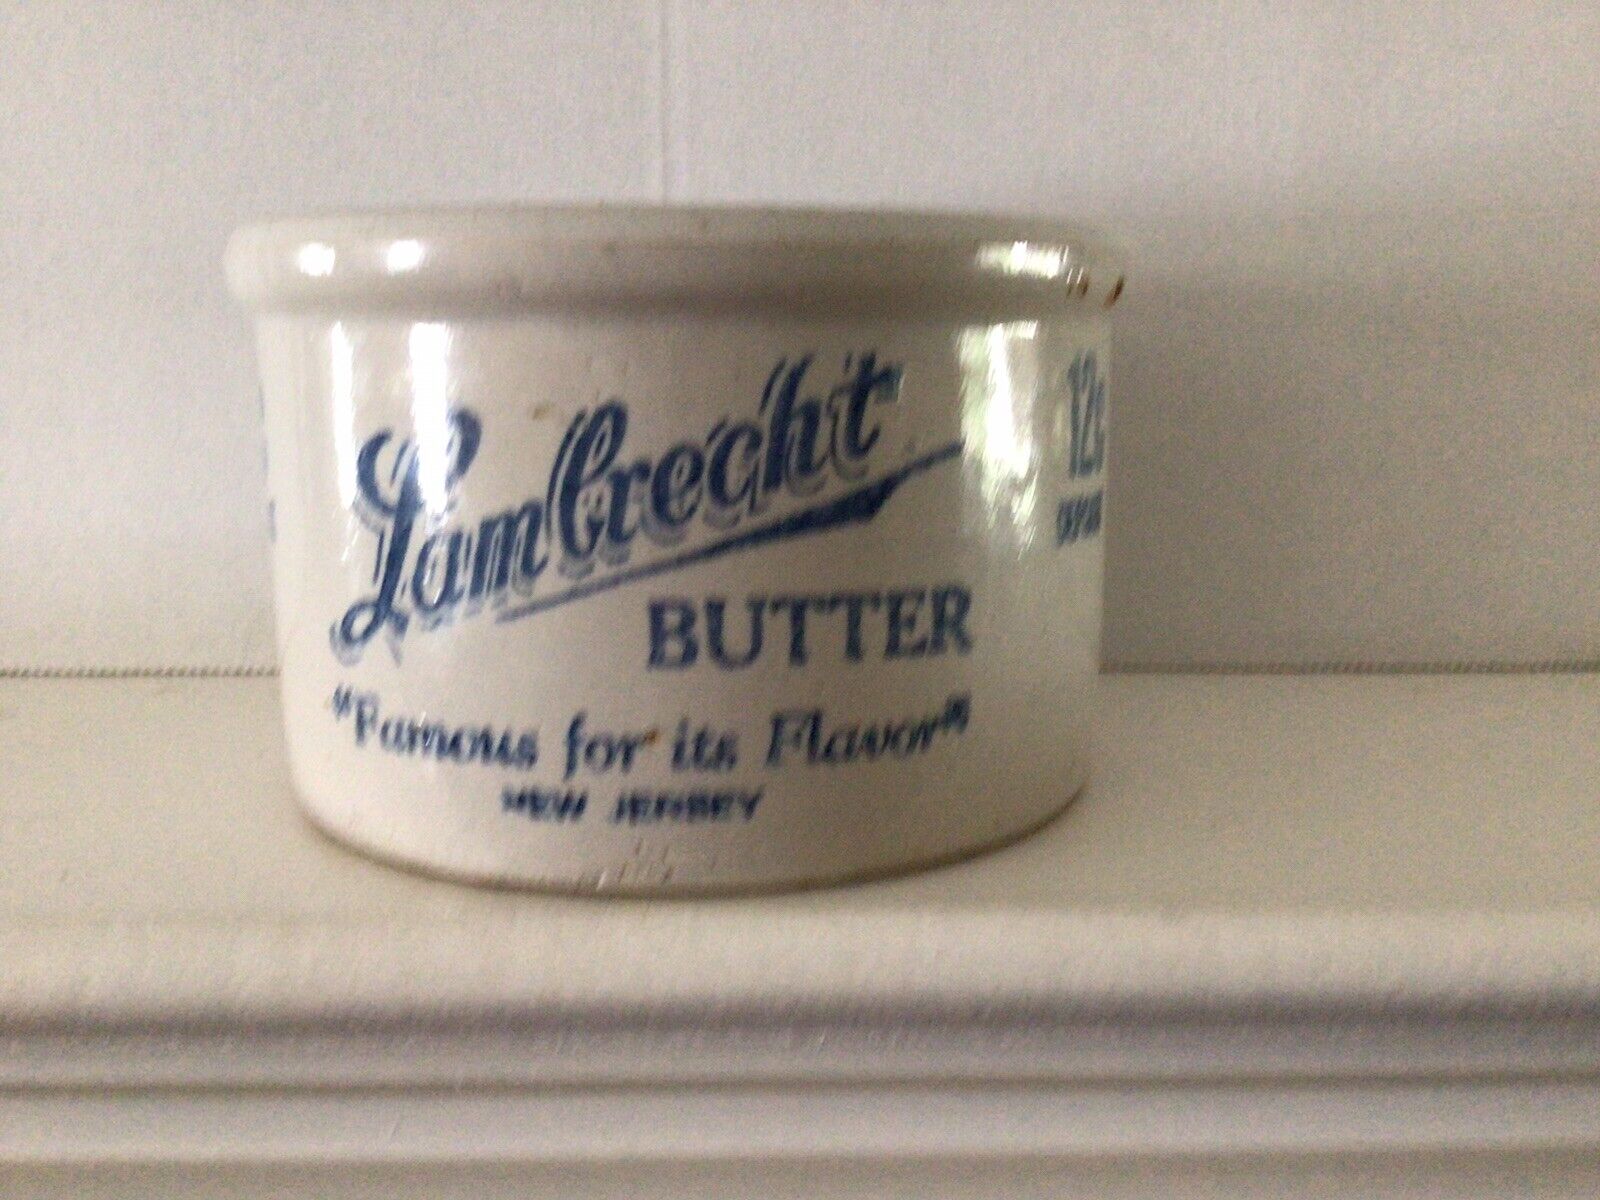 Vintage Butter Stoneware Crock Lambrecht Butter, New Jersey